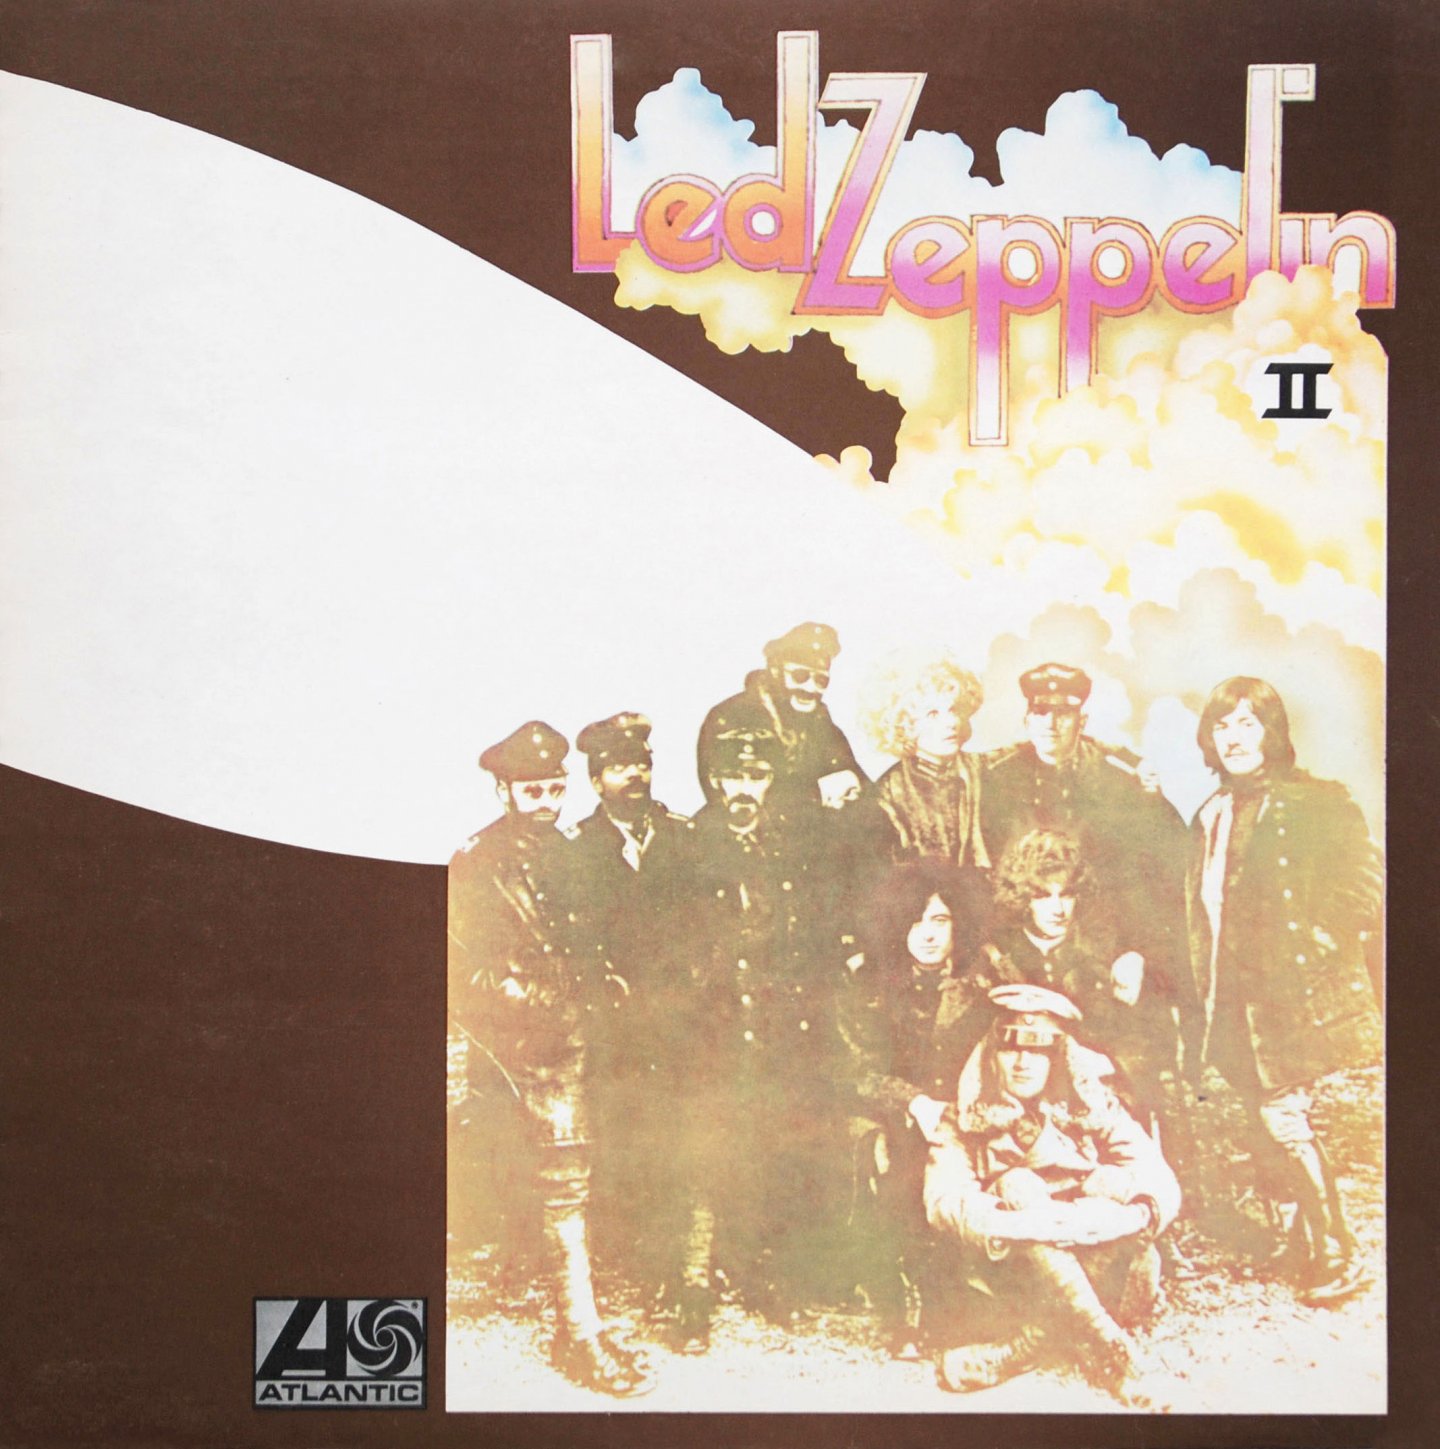 Led Zeppelin – Led Zeppelin II